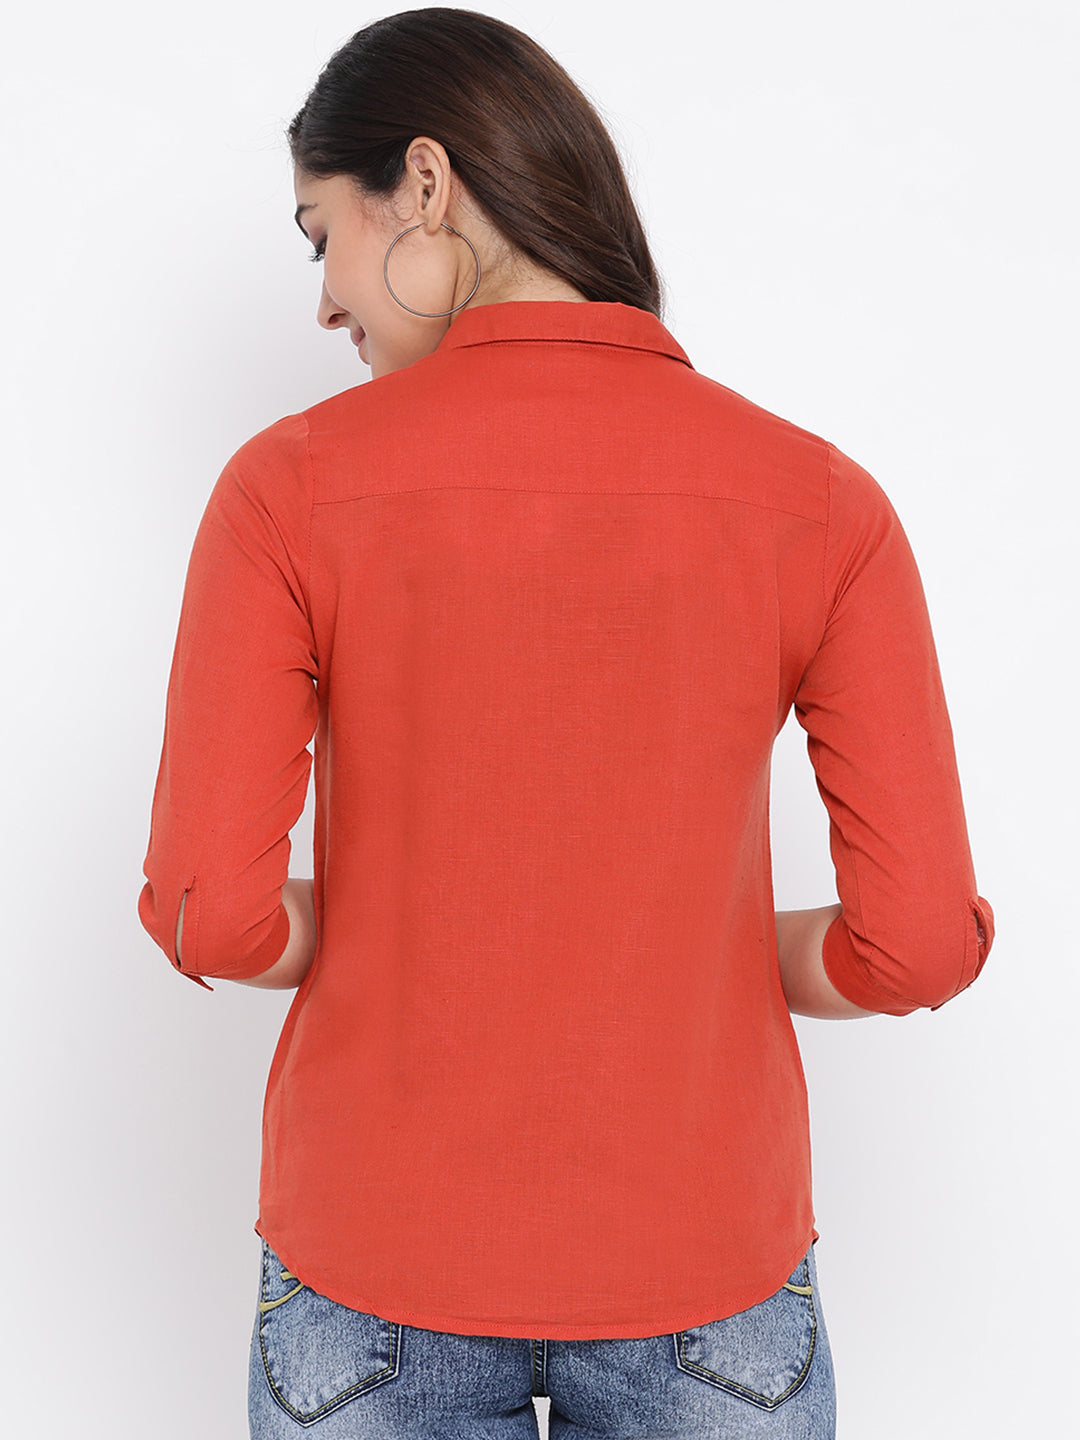 Red Slim Fit Linen Shirt - Women Shirts